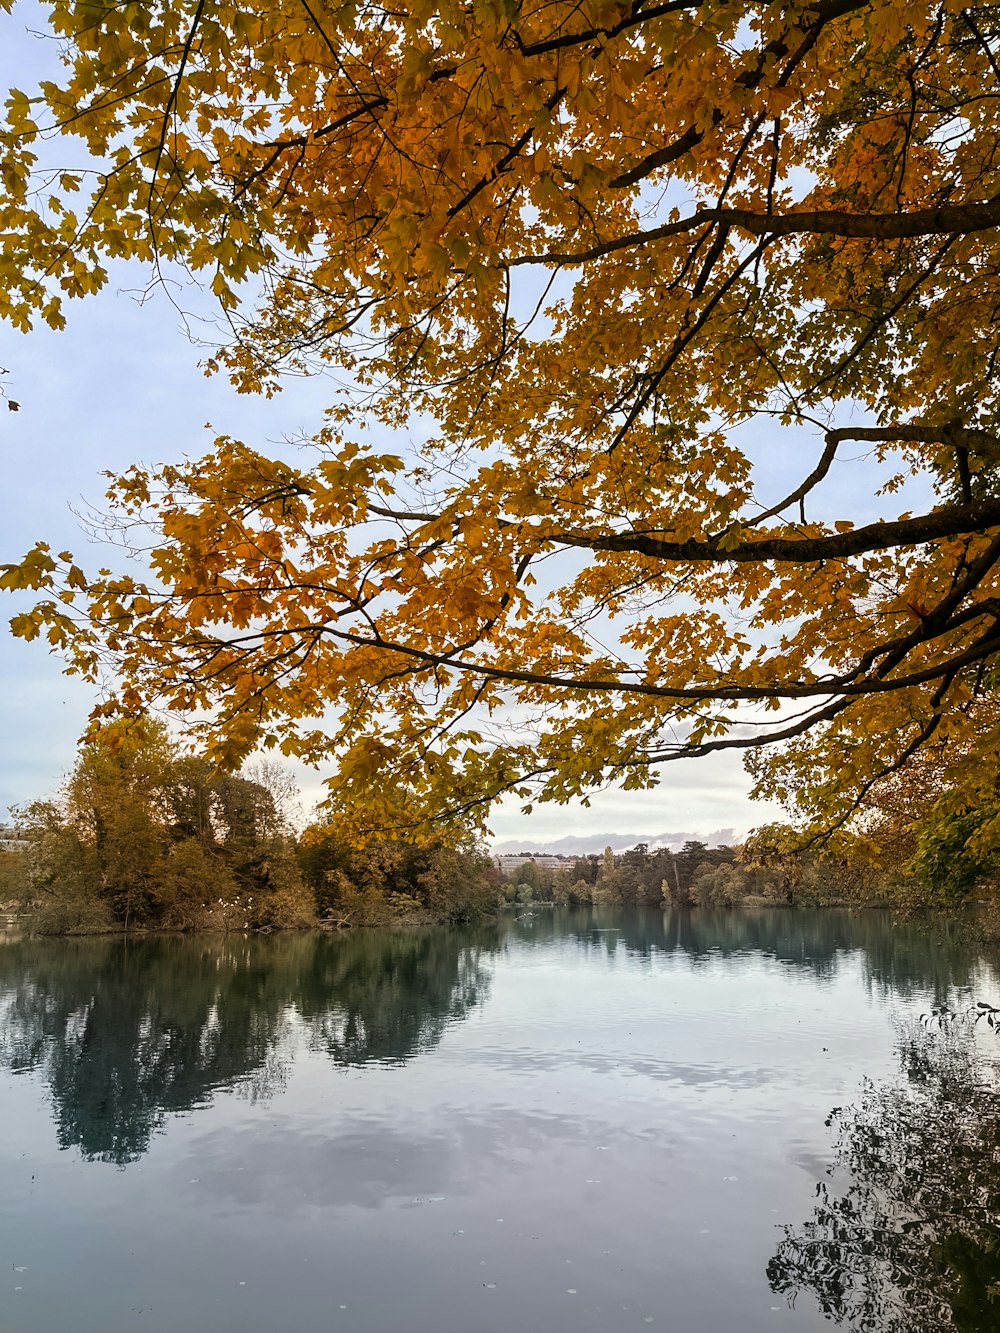 黄色い葉の木々に囲まれた湖